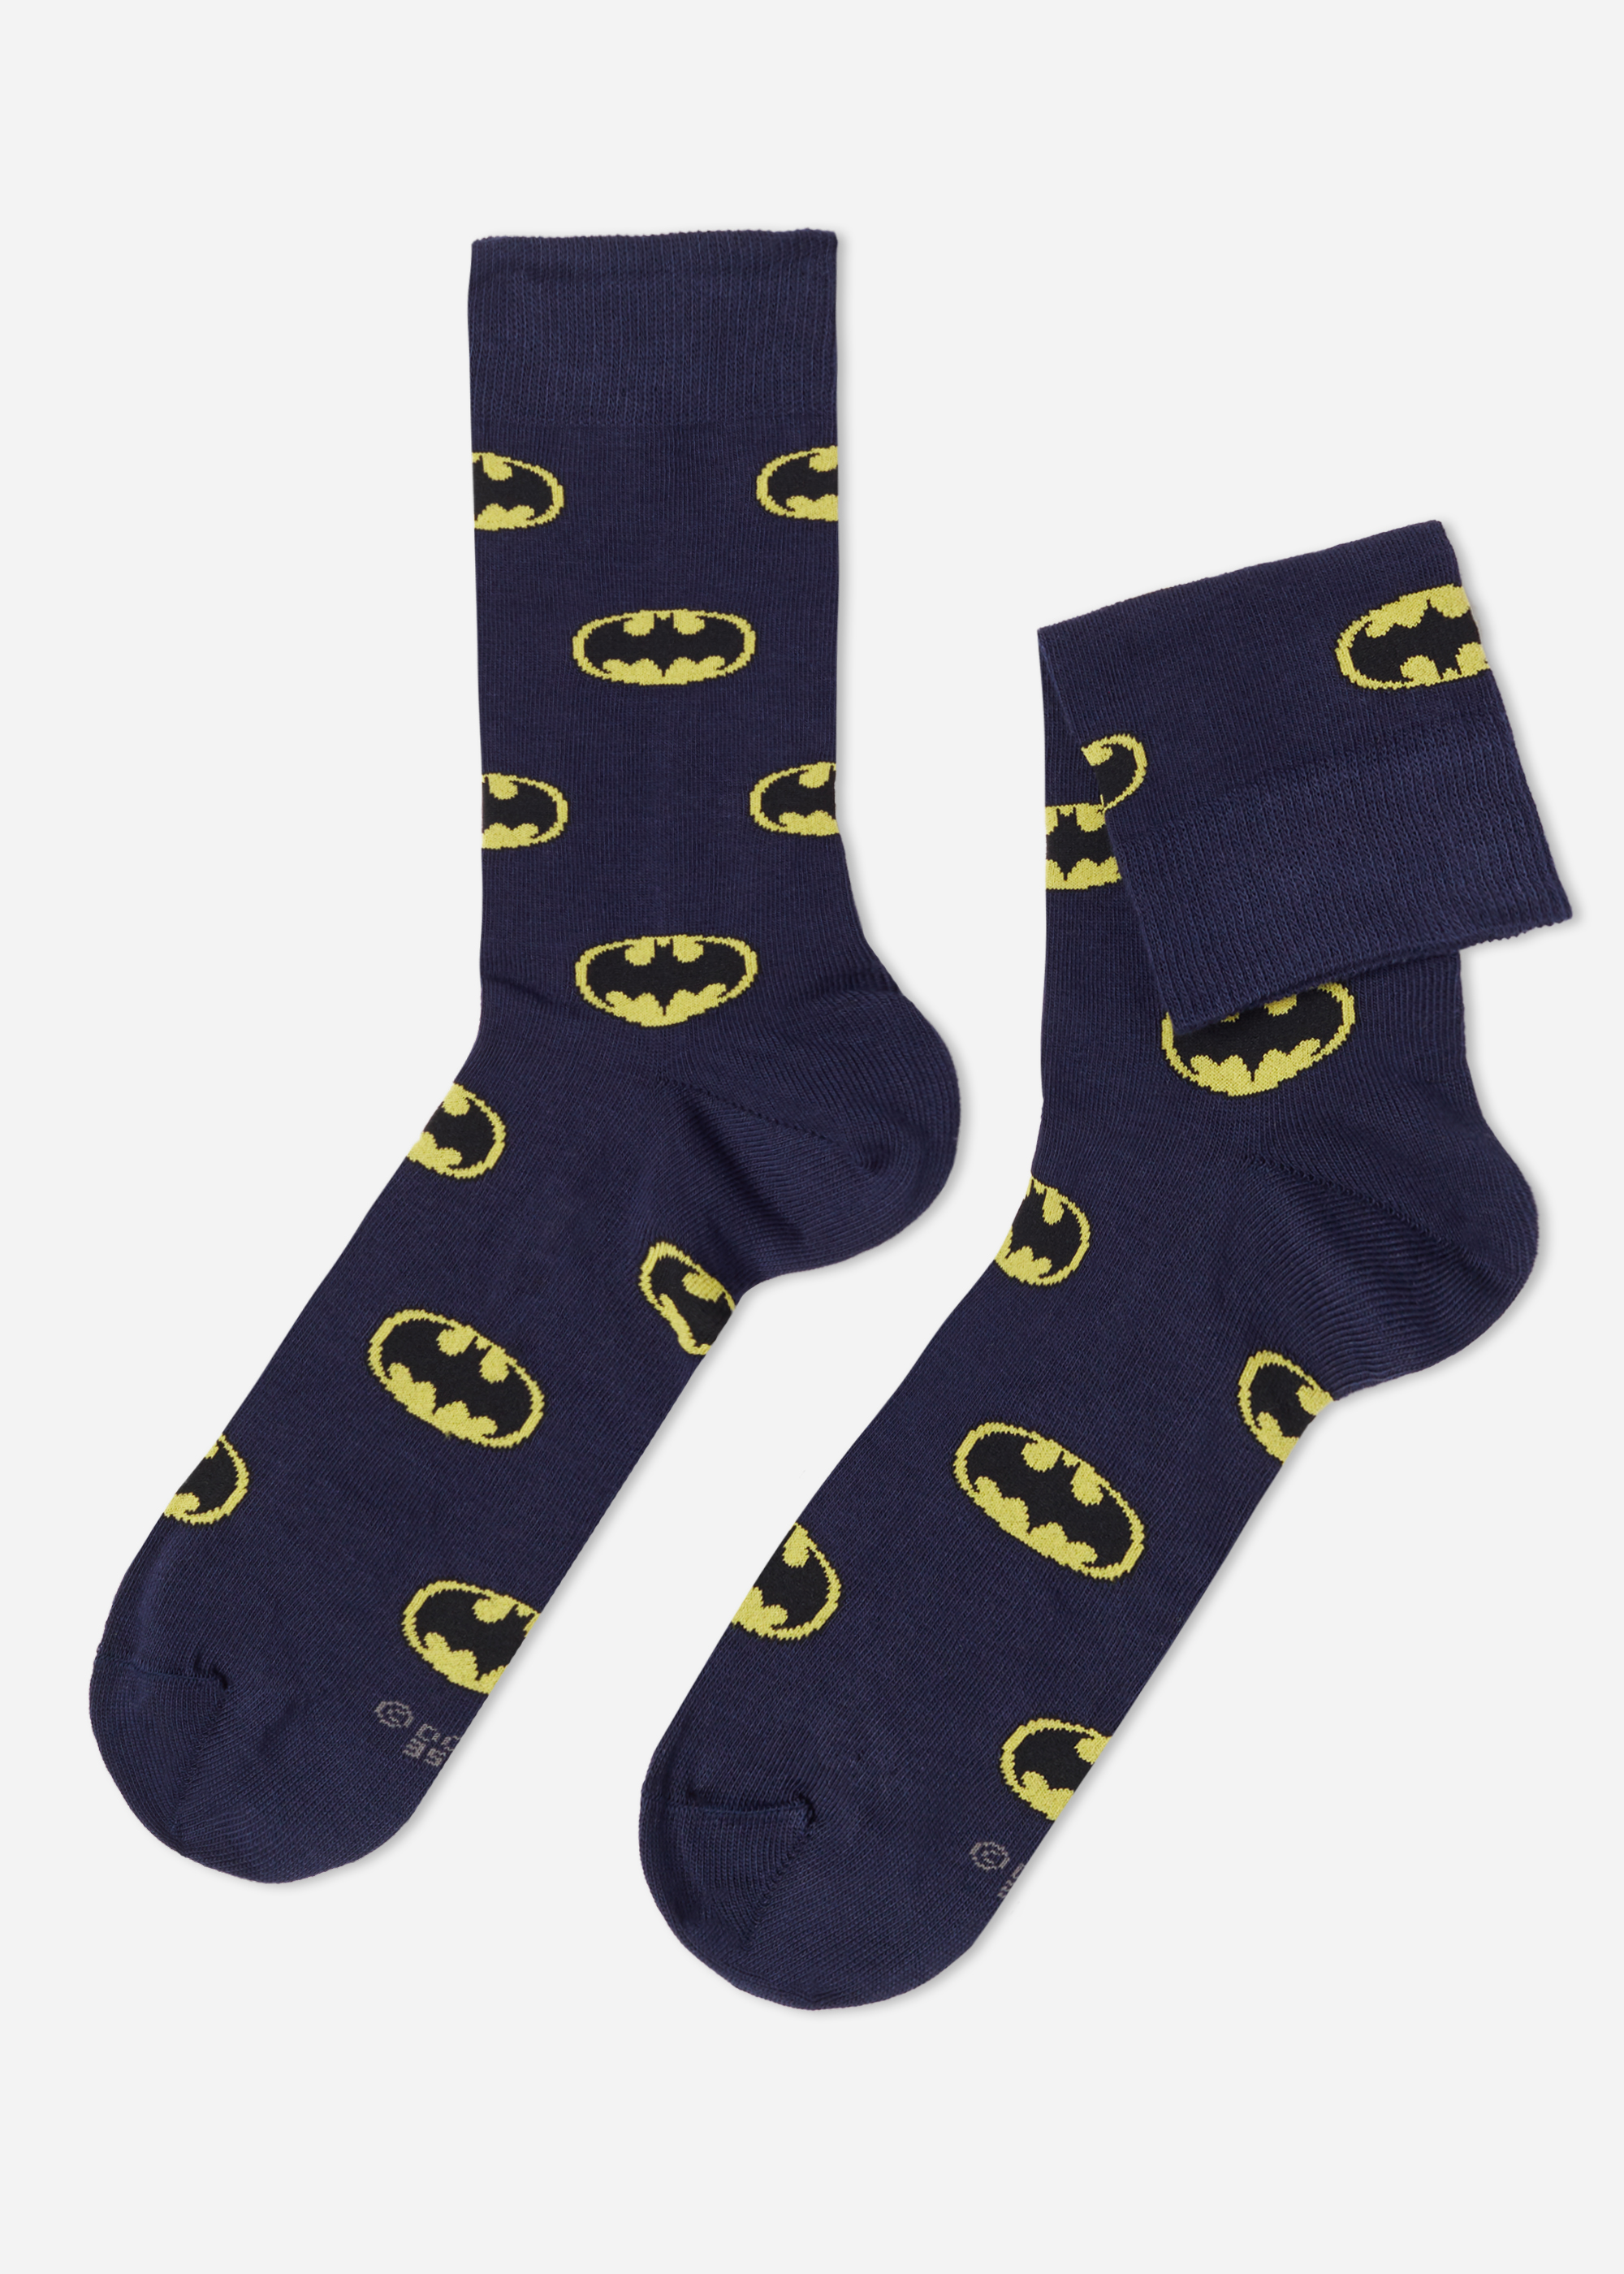 Calcetines Cortos de Hombre con Estampado Digital de Batman Calcetines cortos - Calzedonia